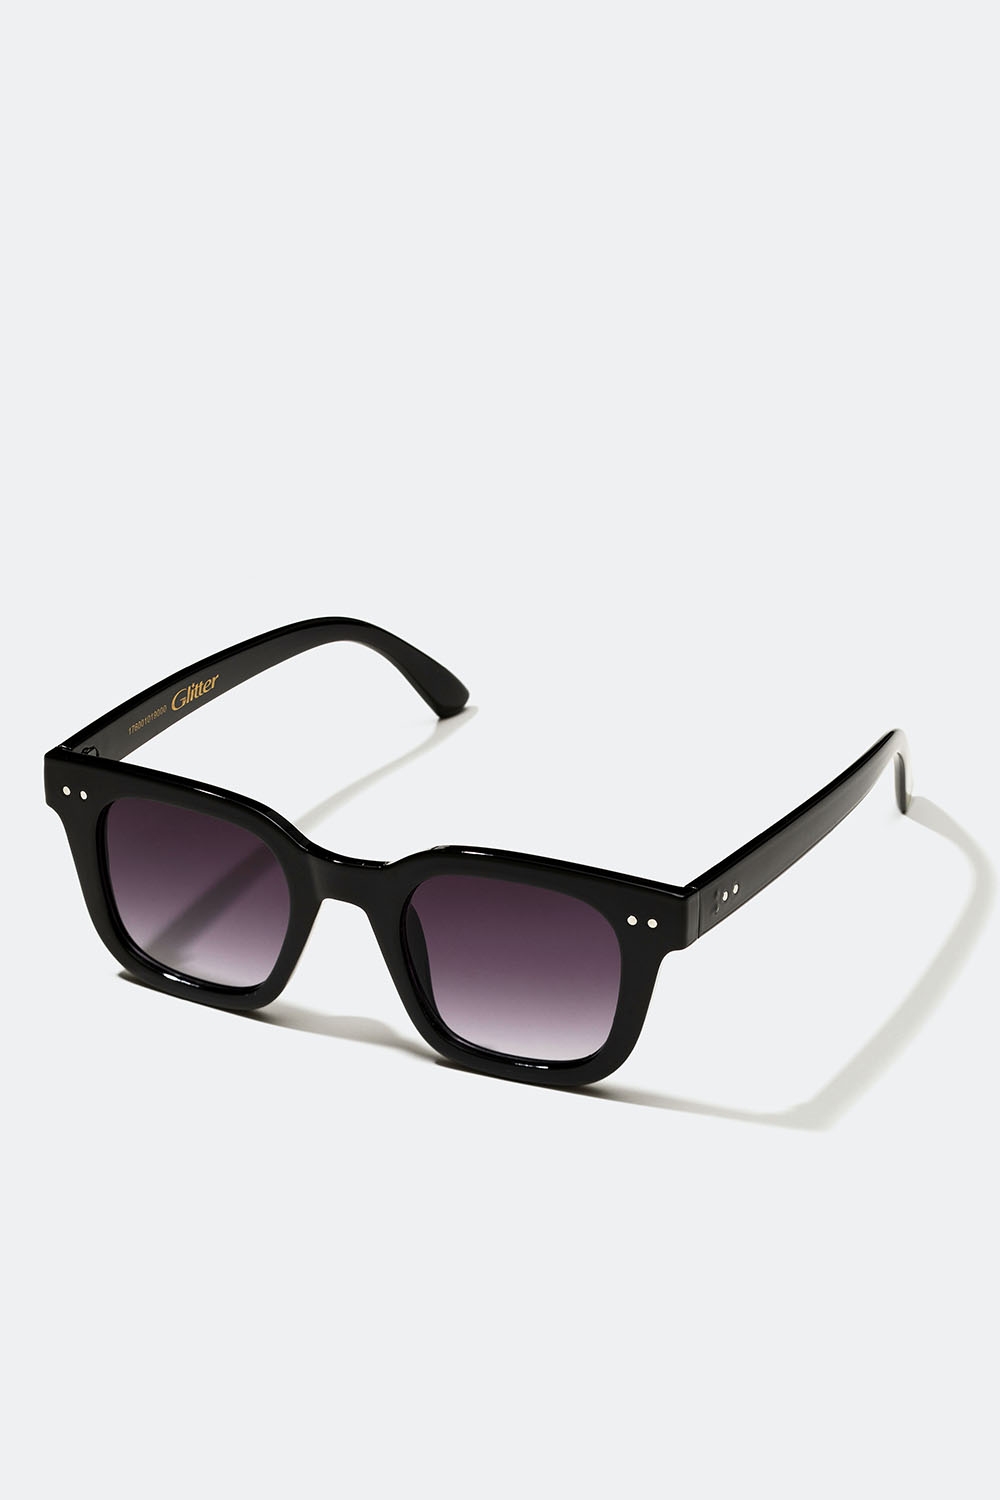 Solglasögon med svarta bågar i gruppen Accessoarer / Solglasögon hos Glitter (176001019000)